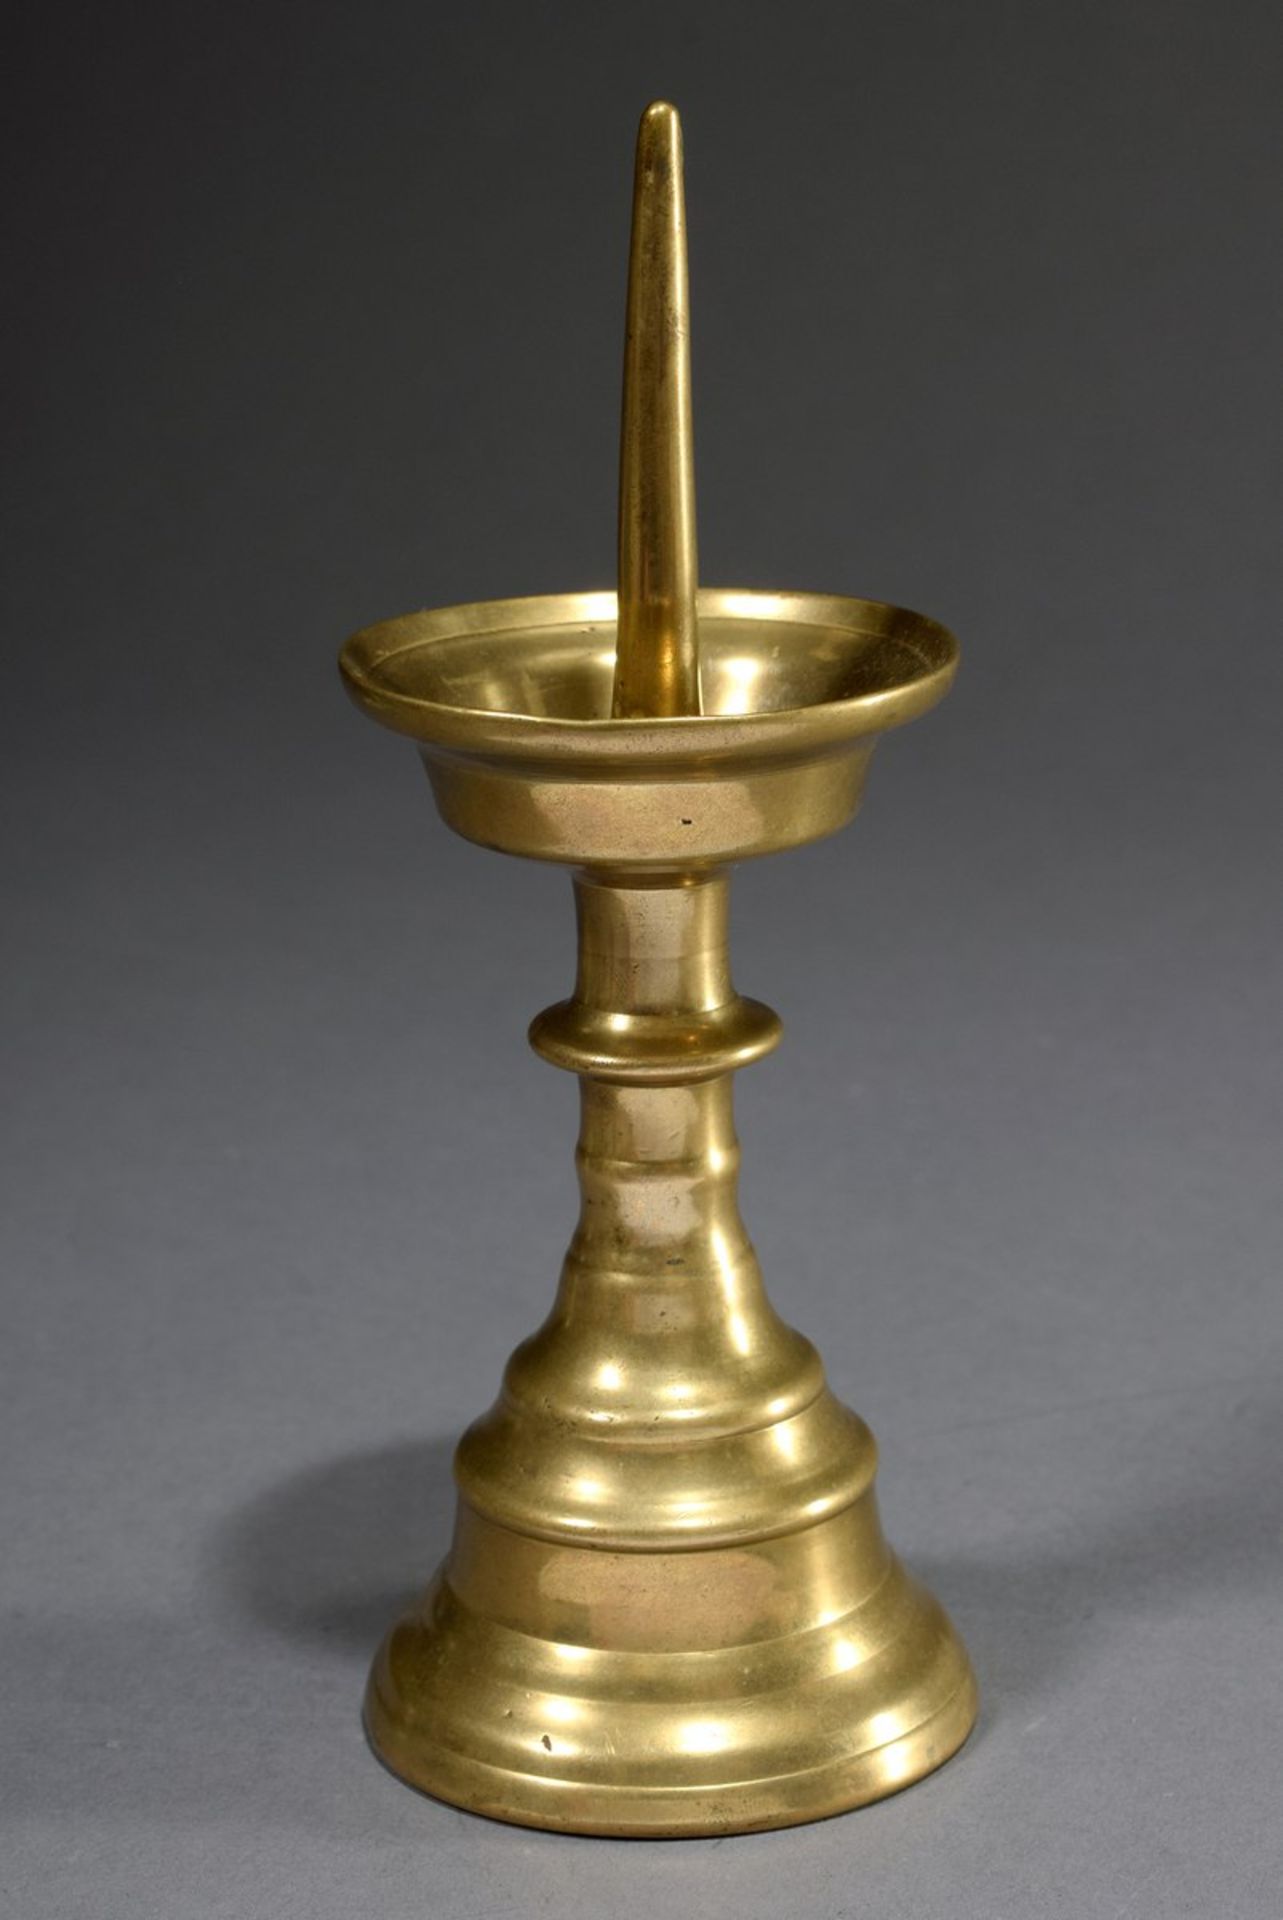 Antiker Gelbguss Leuchter mit abgetreppten Wülst | Antique brass candlestick with stepped beads and